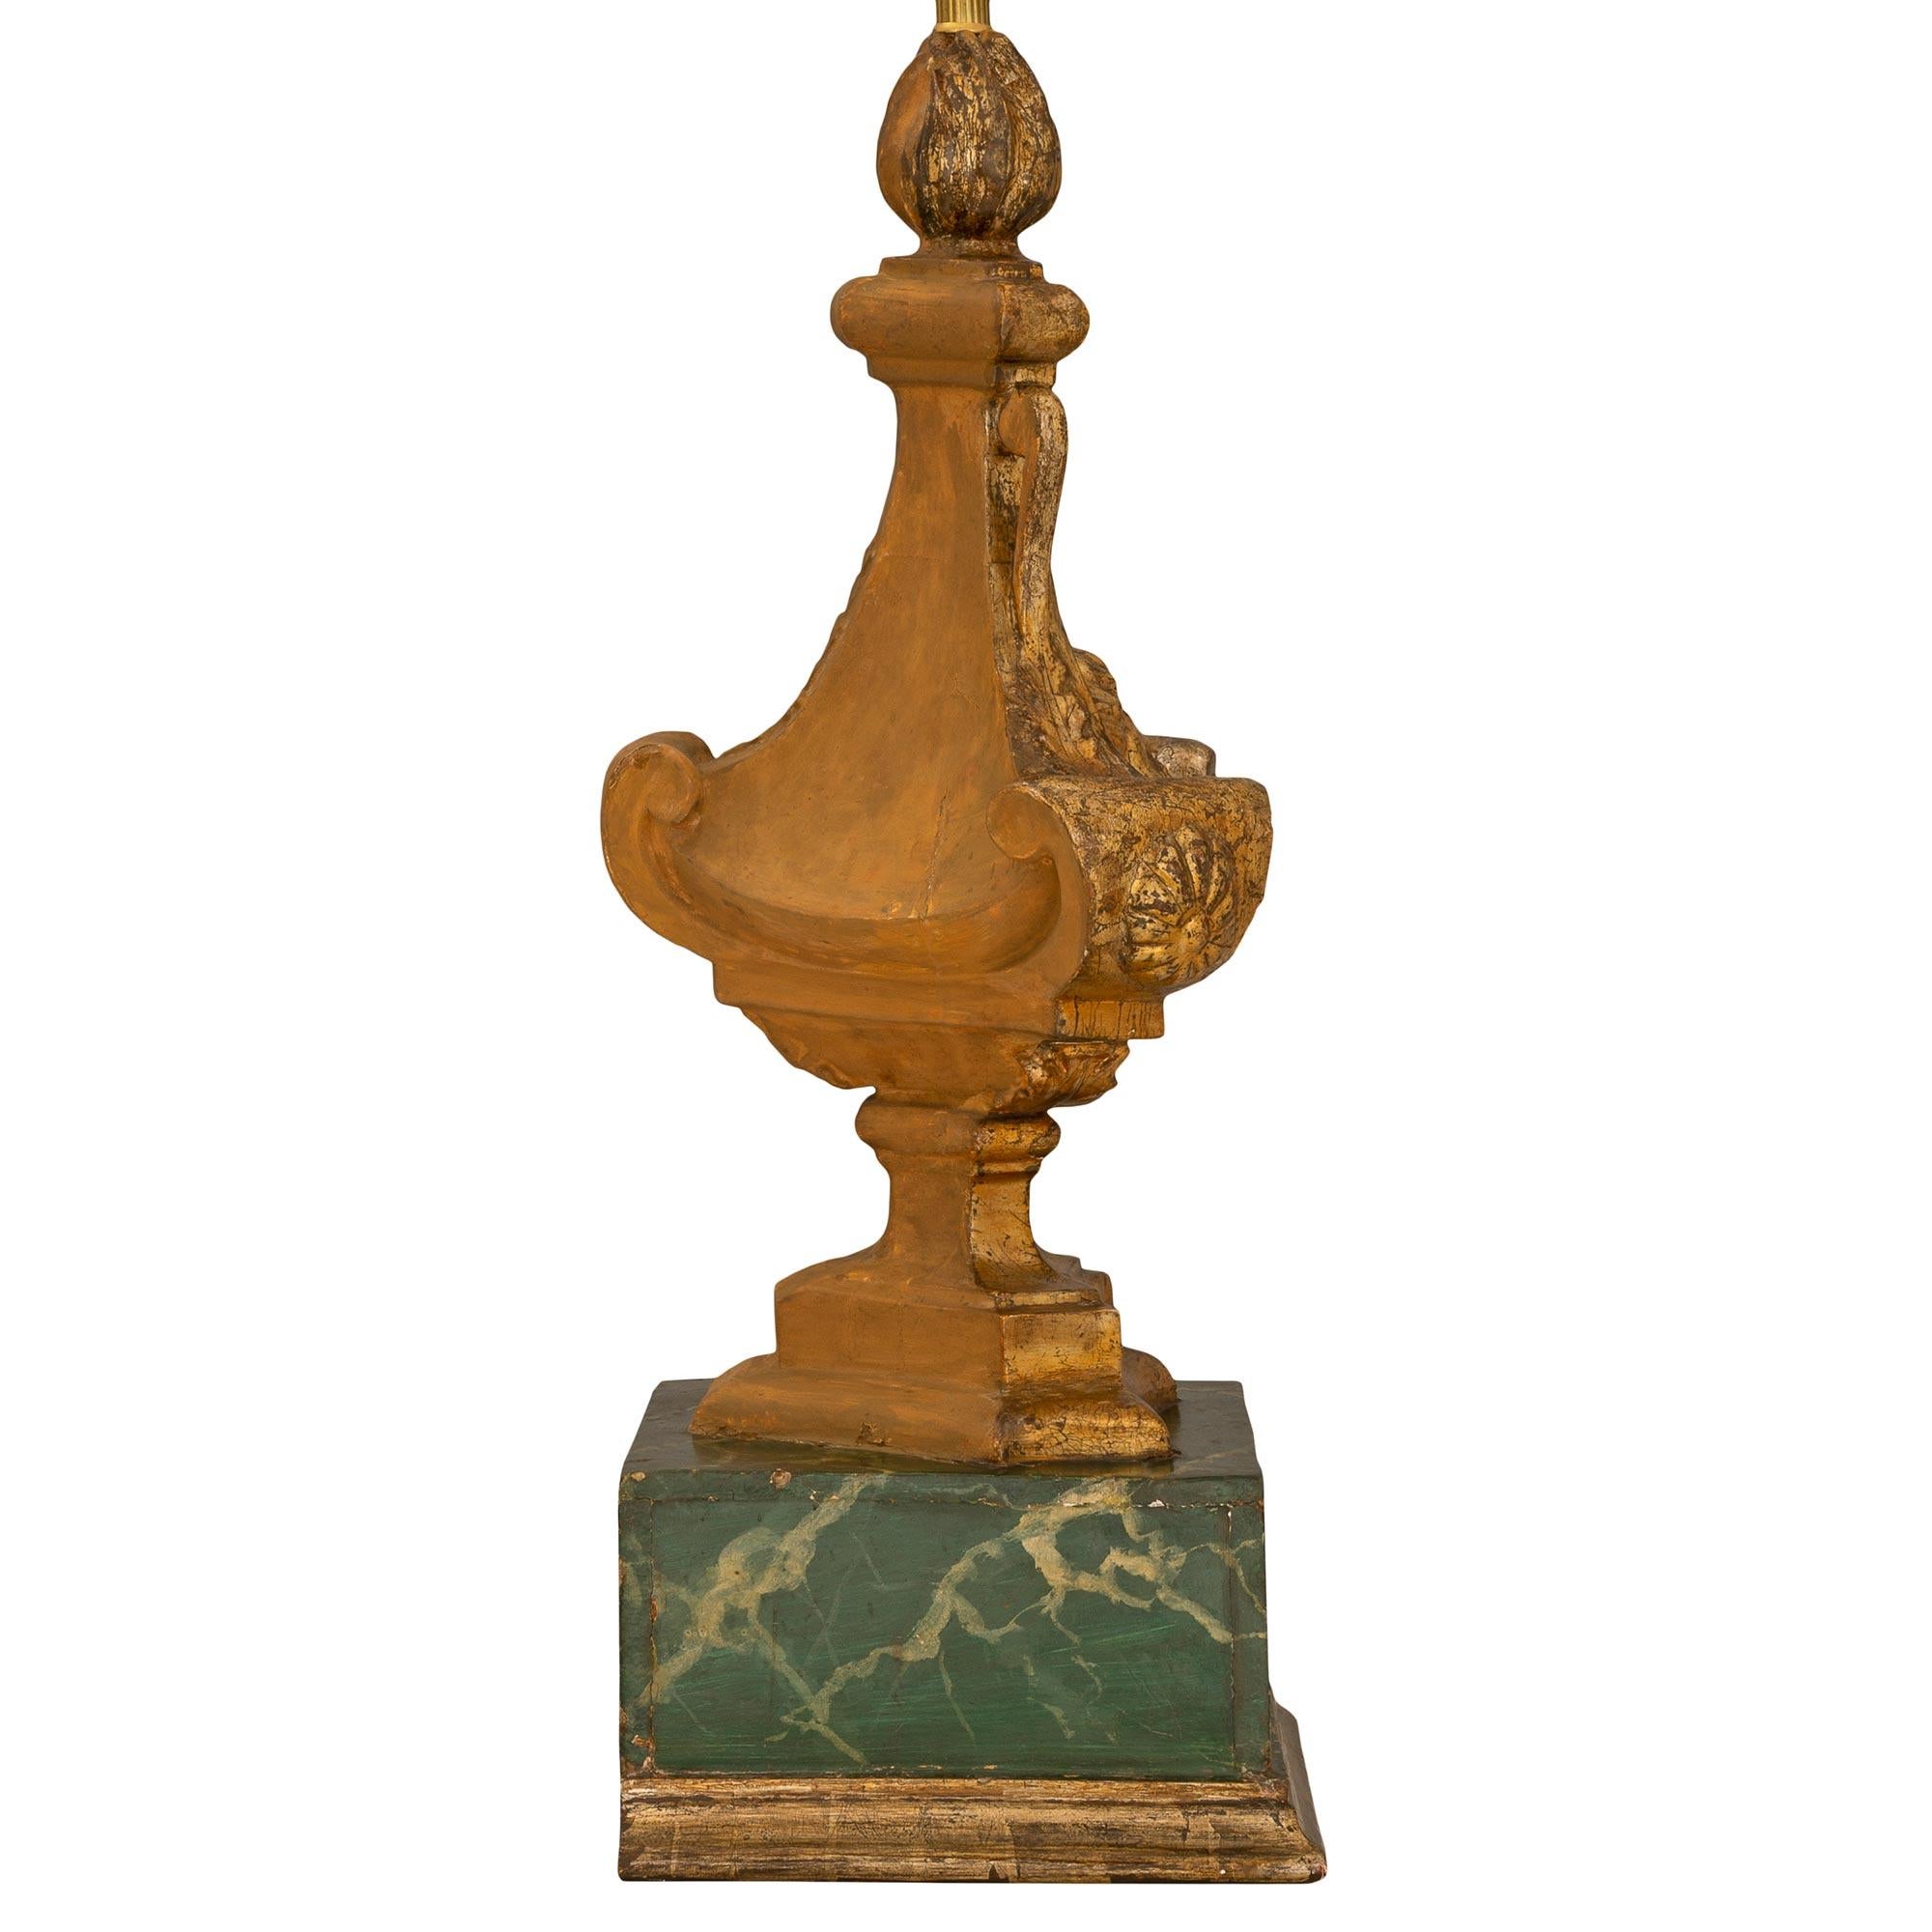 Paire de lampes italiennes d'époque Louis XVI du 18ème siècle en Mecque et faux marbre peint. Chaque lampe est surélevée par une base carrée en faux marbre peint merveilleusement exécutée avec une bande de Mecque finement marbrée. Les corps les plus